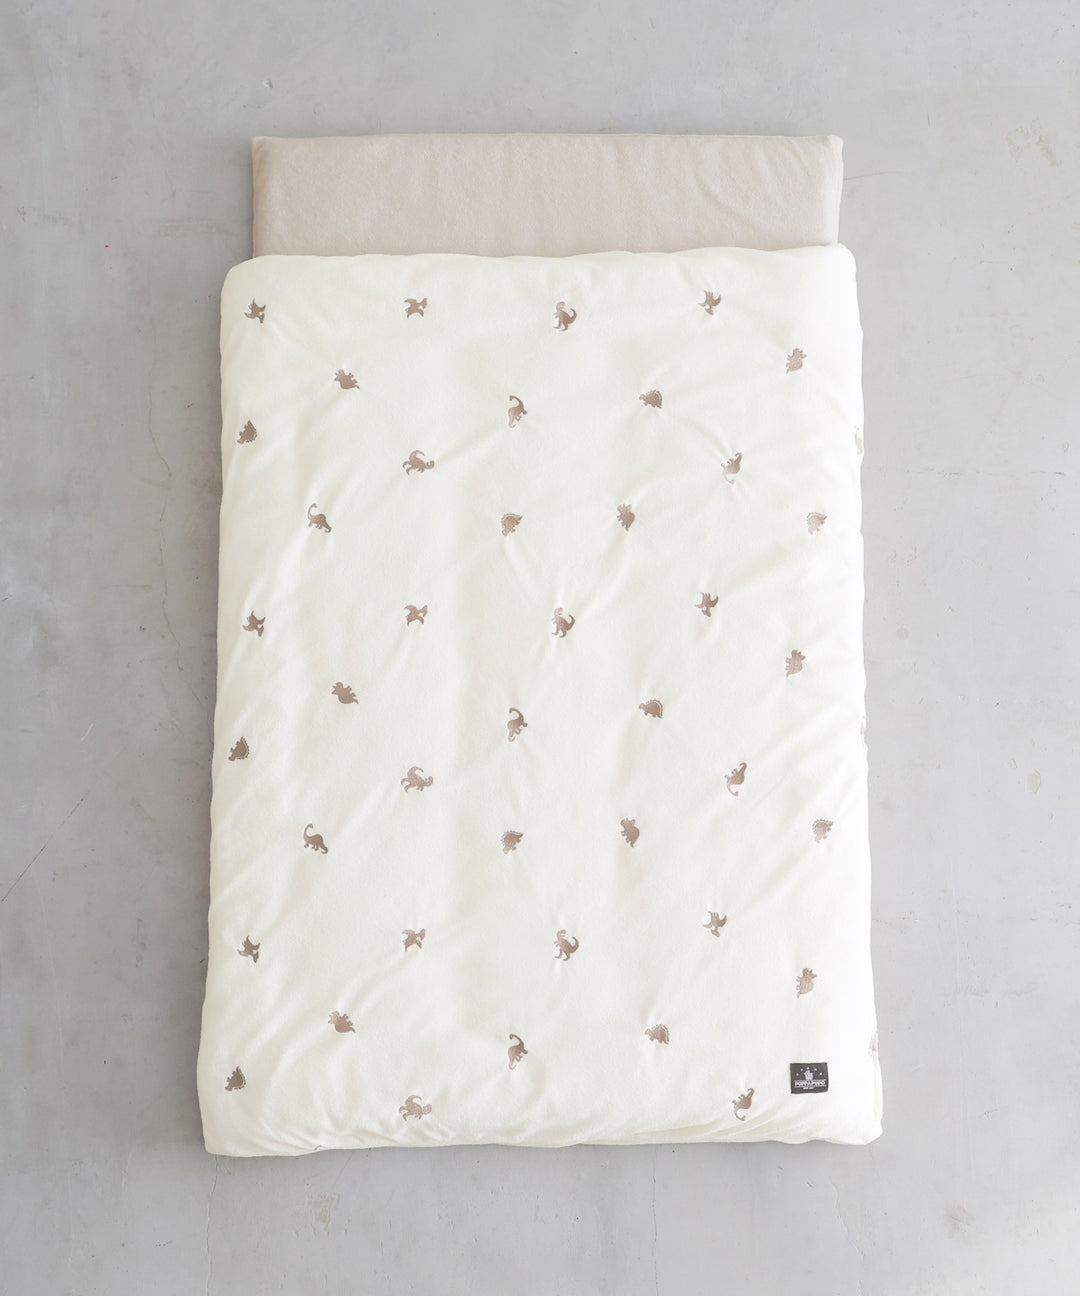 Washable nap futon set 5-pieces (Pile fabric)